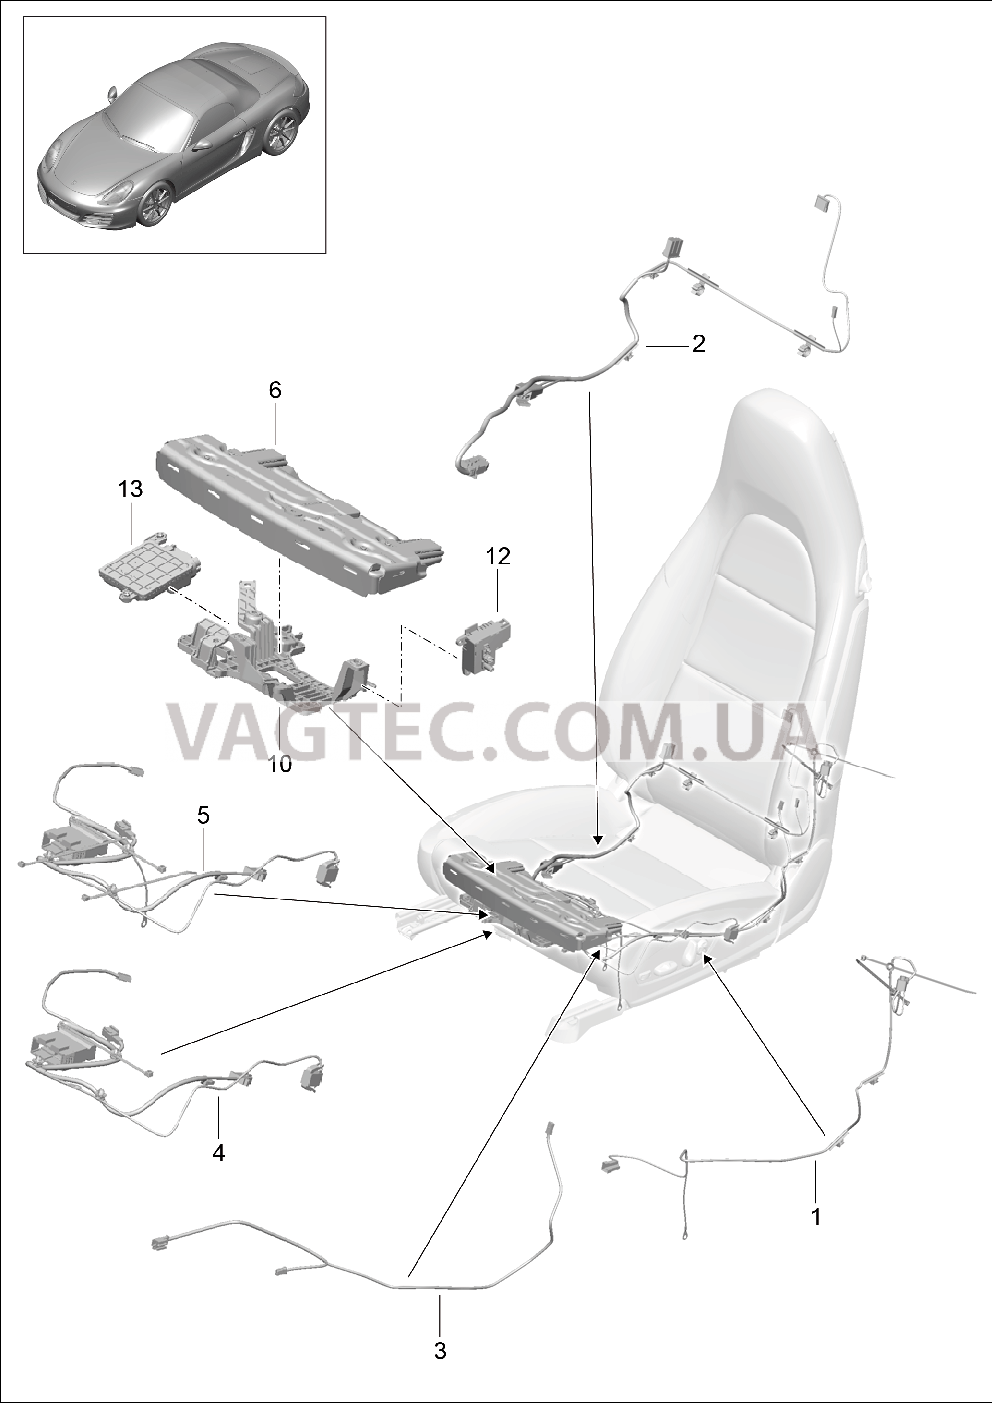 817-025 Жгуты проводов, Выключатель, Блок управления, Электродвигатель, Спортивное сиденье для PORSCHE Cayman 2014-2016